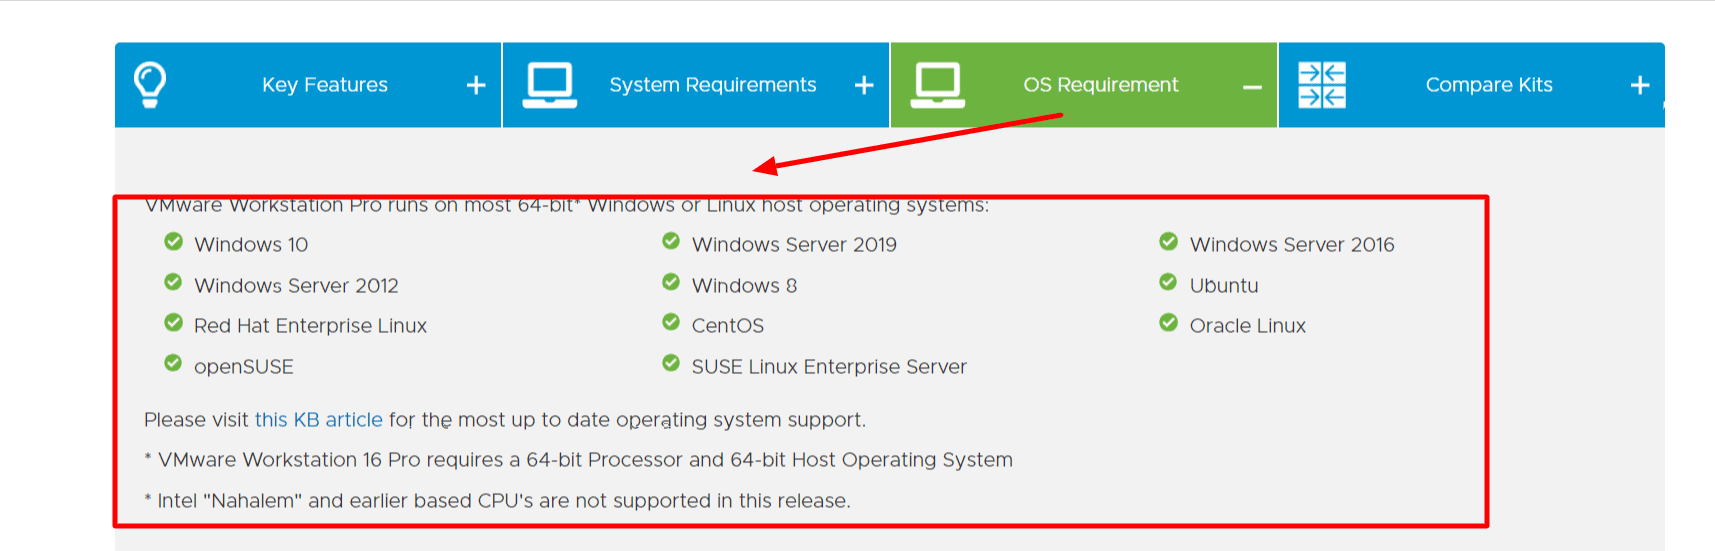 VMware Workstation Requirement